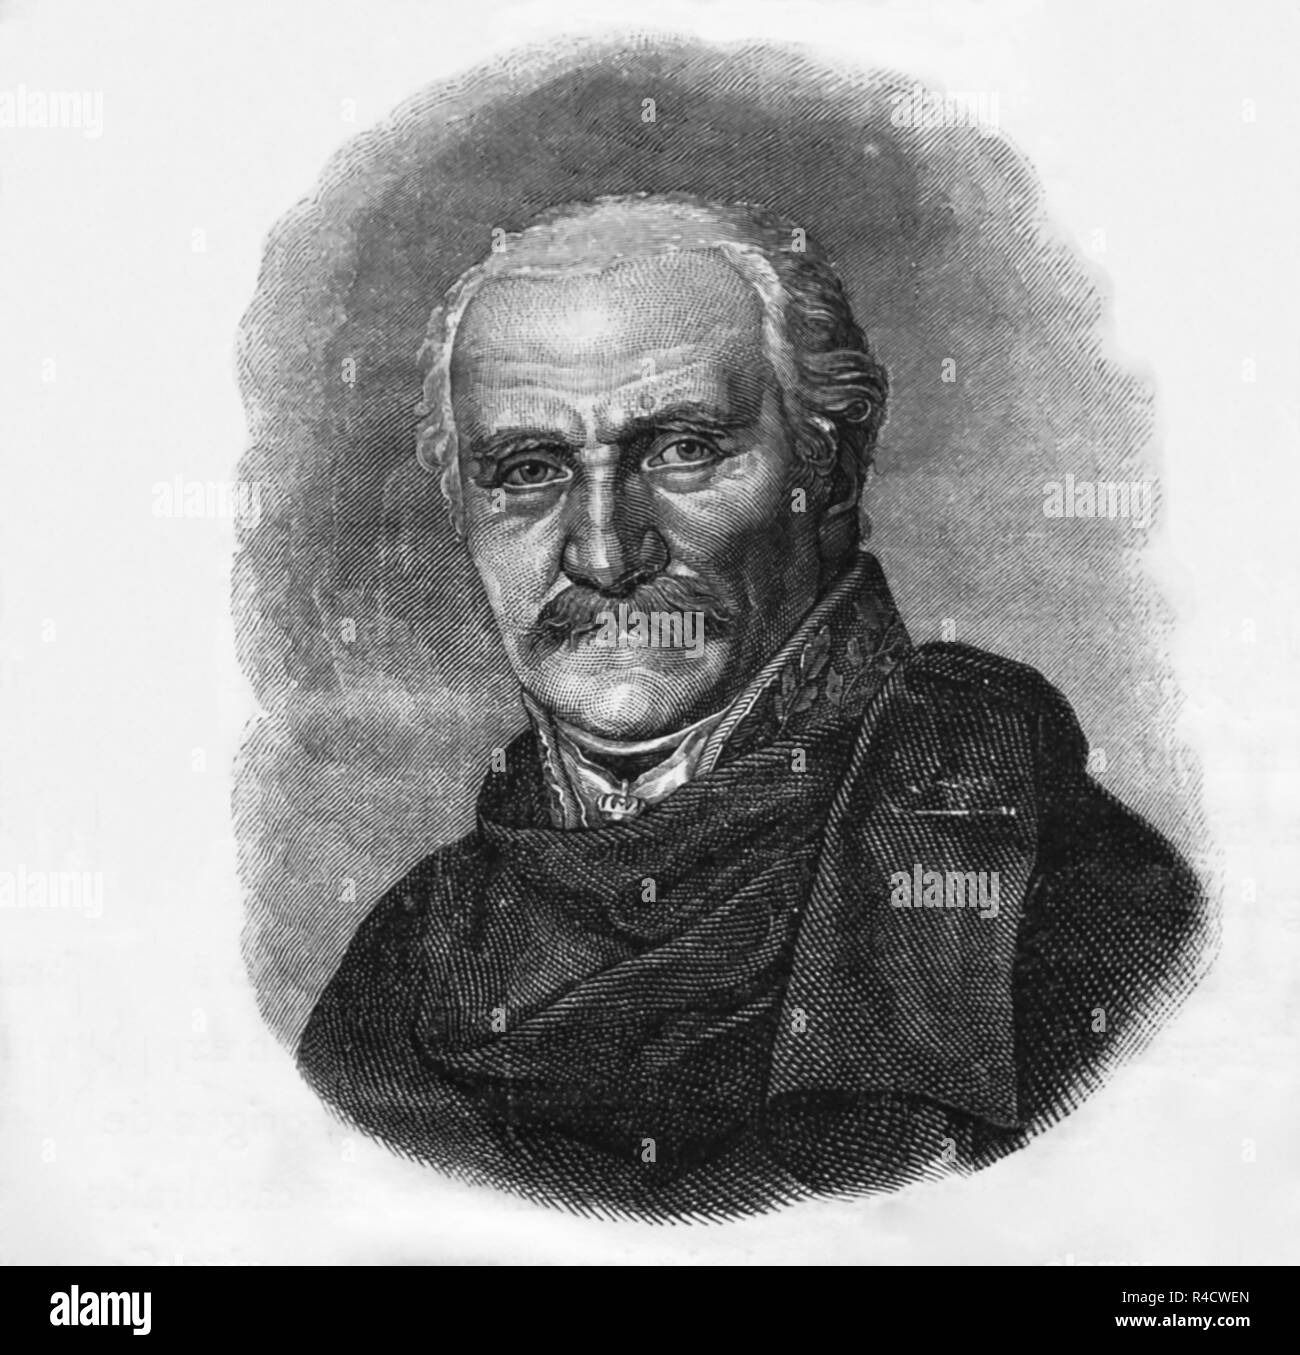 Gebhard Leberecht von Blücher (1742-1819). Le feld-maréchal prussien. Gravure de Germania, 1882. Banque D'Images